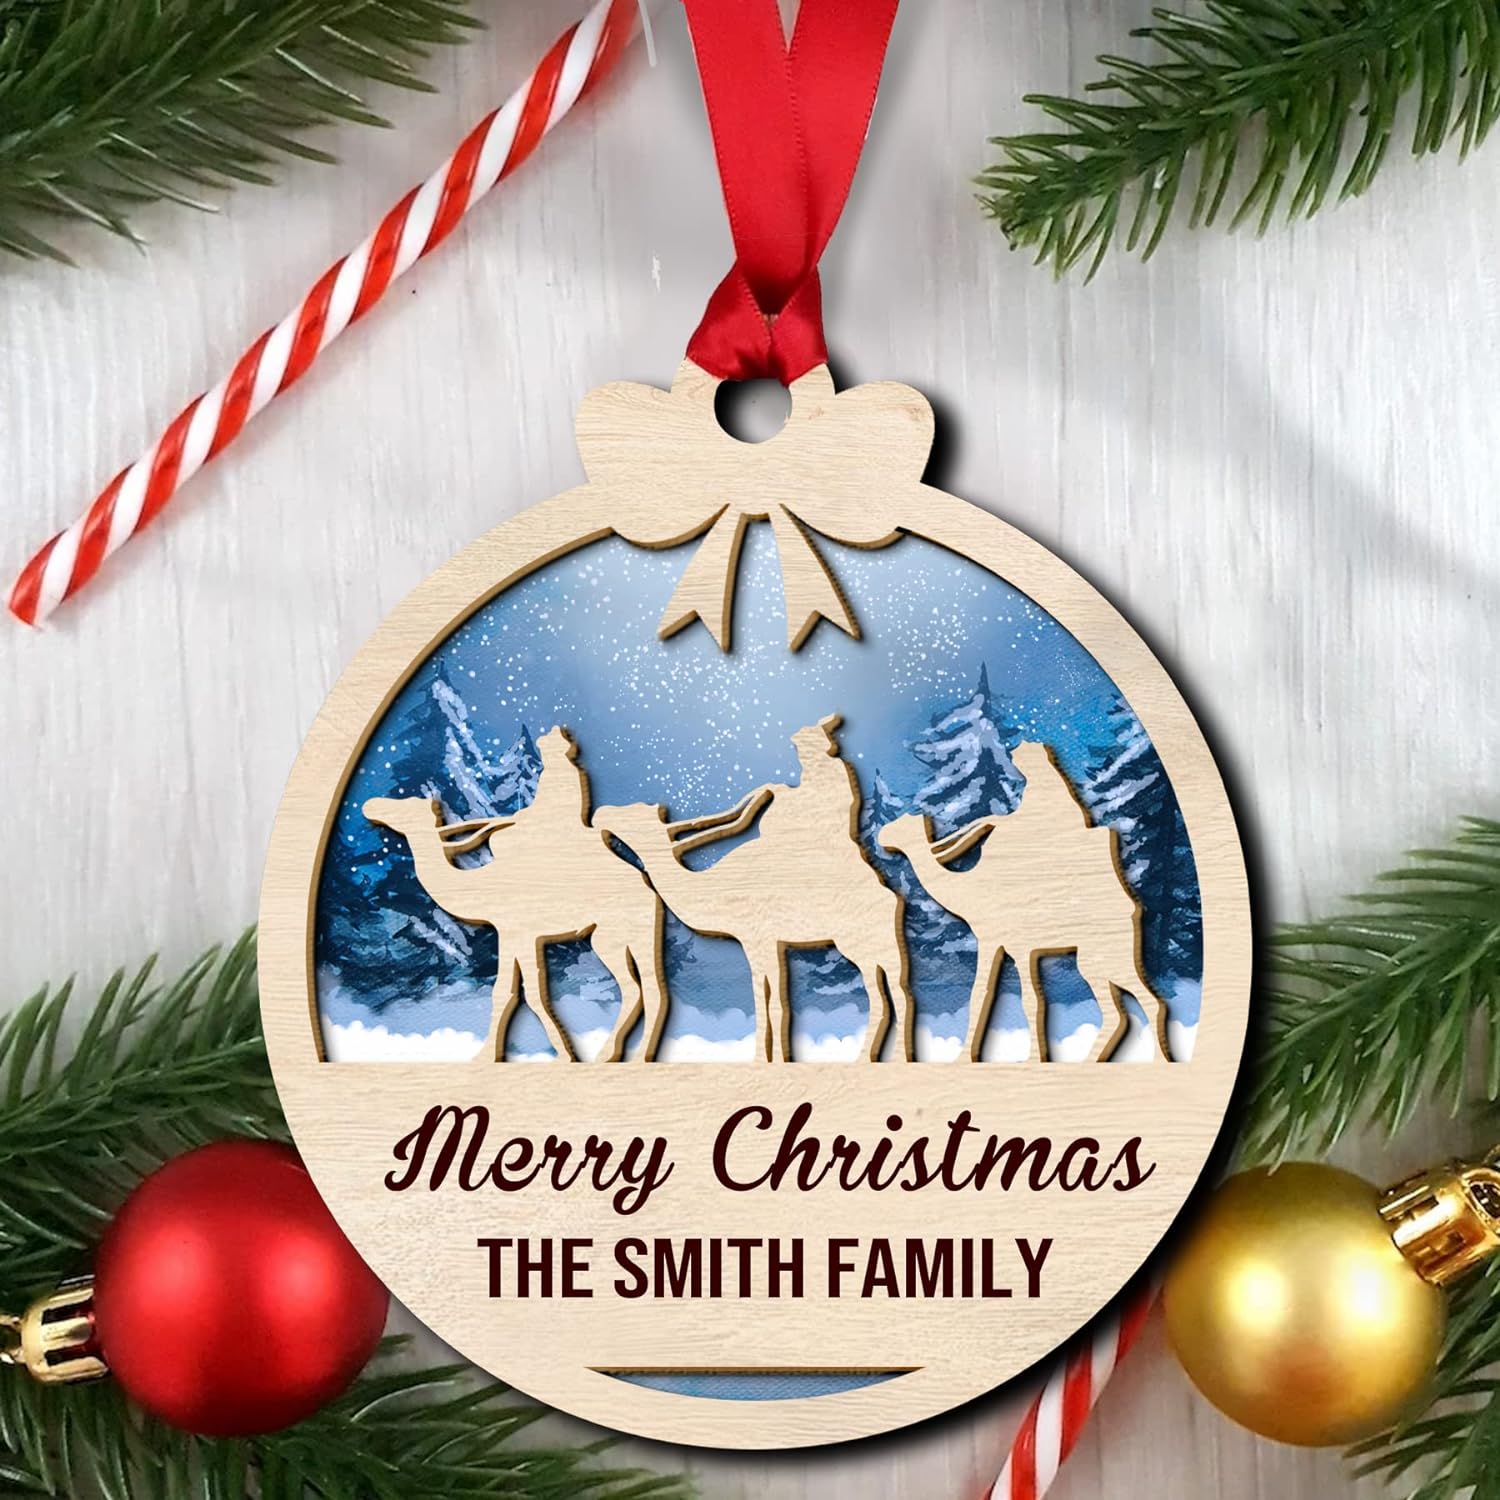 Personalized Nativity Scene Wood Layered Ornaments - Personalized Ornaments for Christmas Tree Decorations